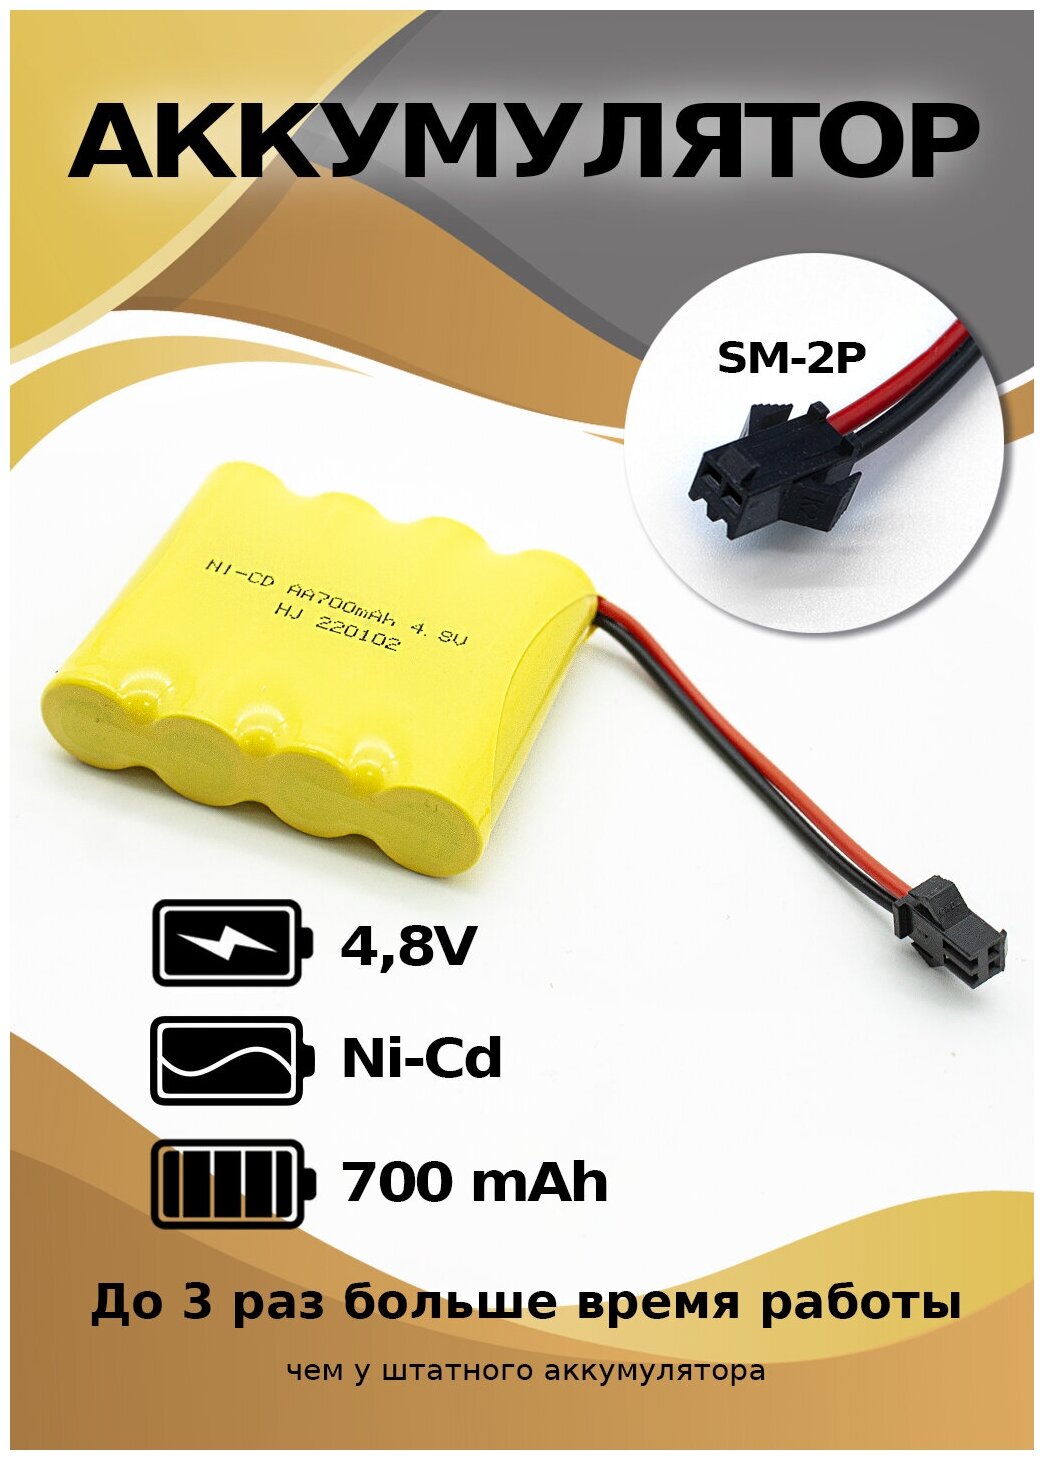 Аккумулятор 4,8 V 700 mAh разъем YP для радиоуправляемых игрушек